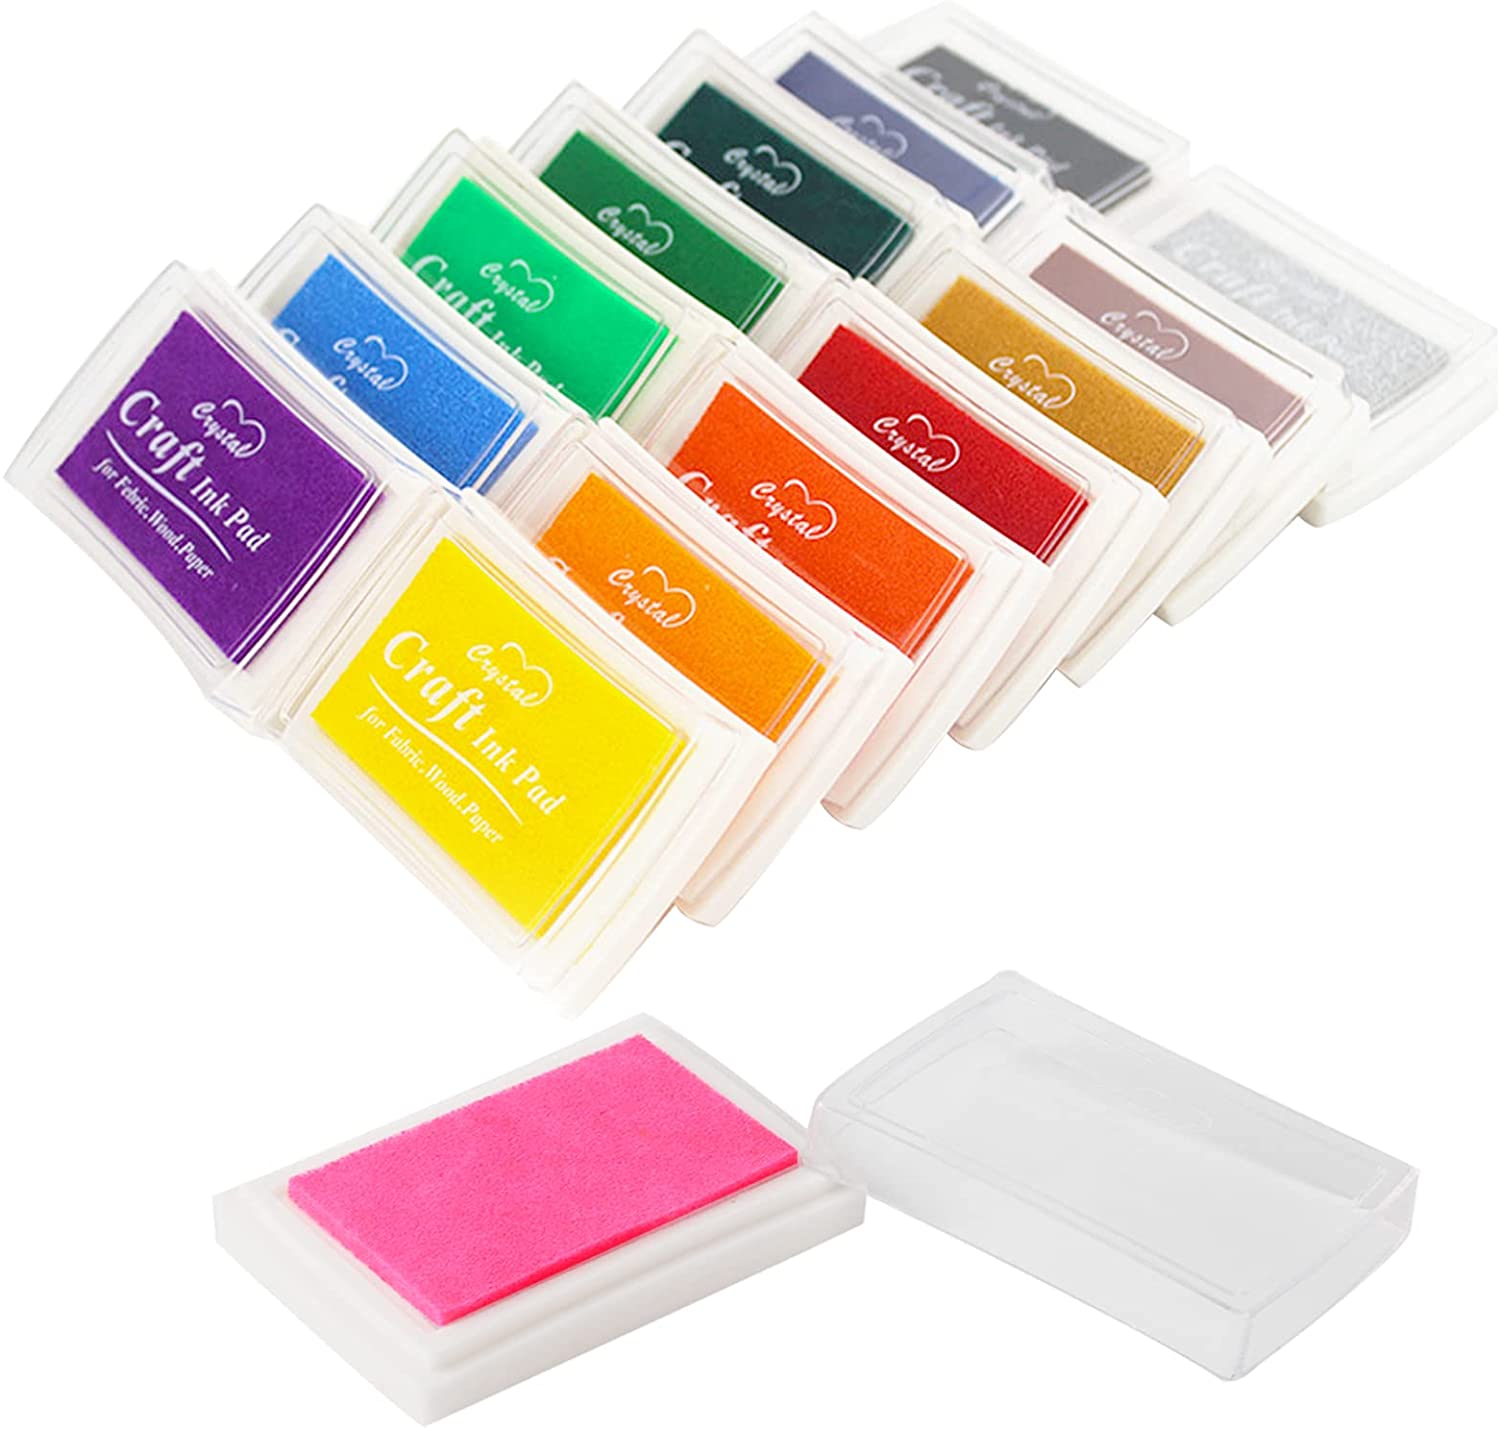 20 stk Mehrfarbige Stempelkissen Fingerfarbe Set für DIY Scrapbooking 